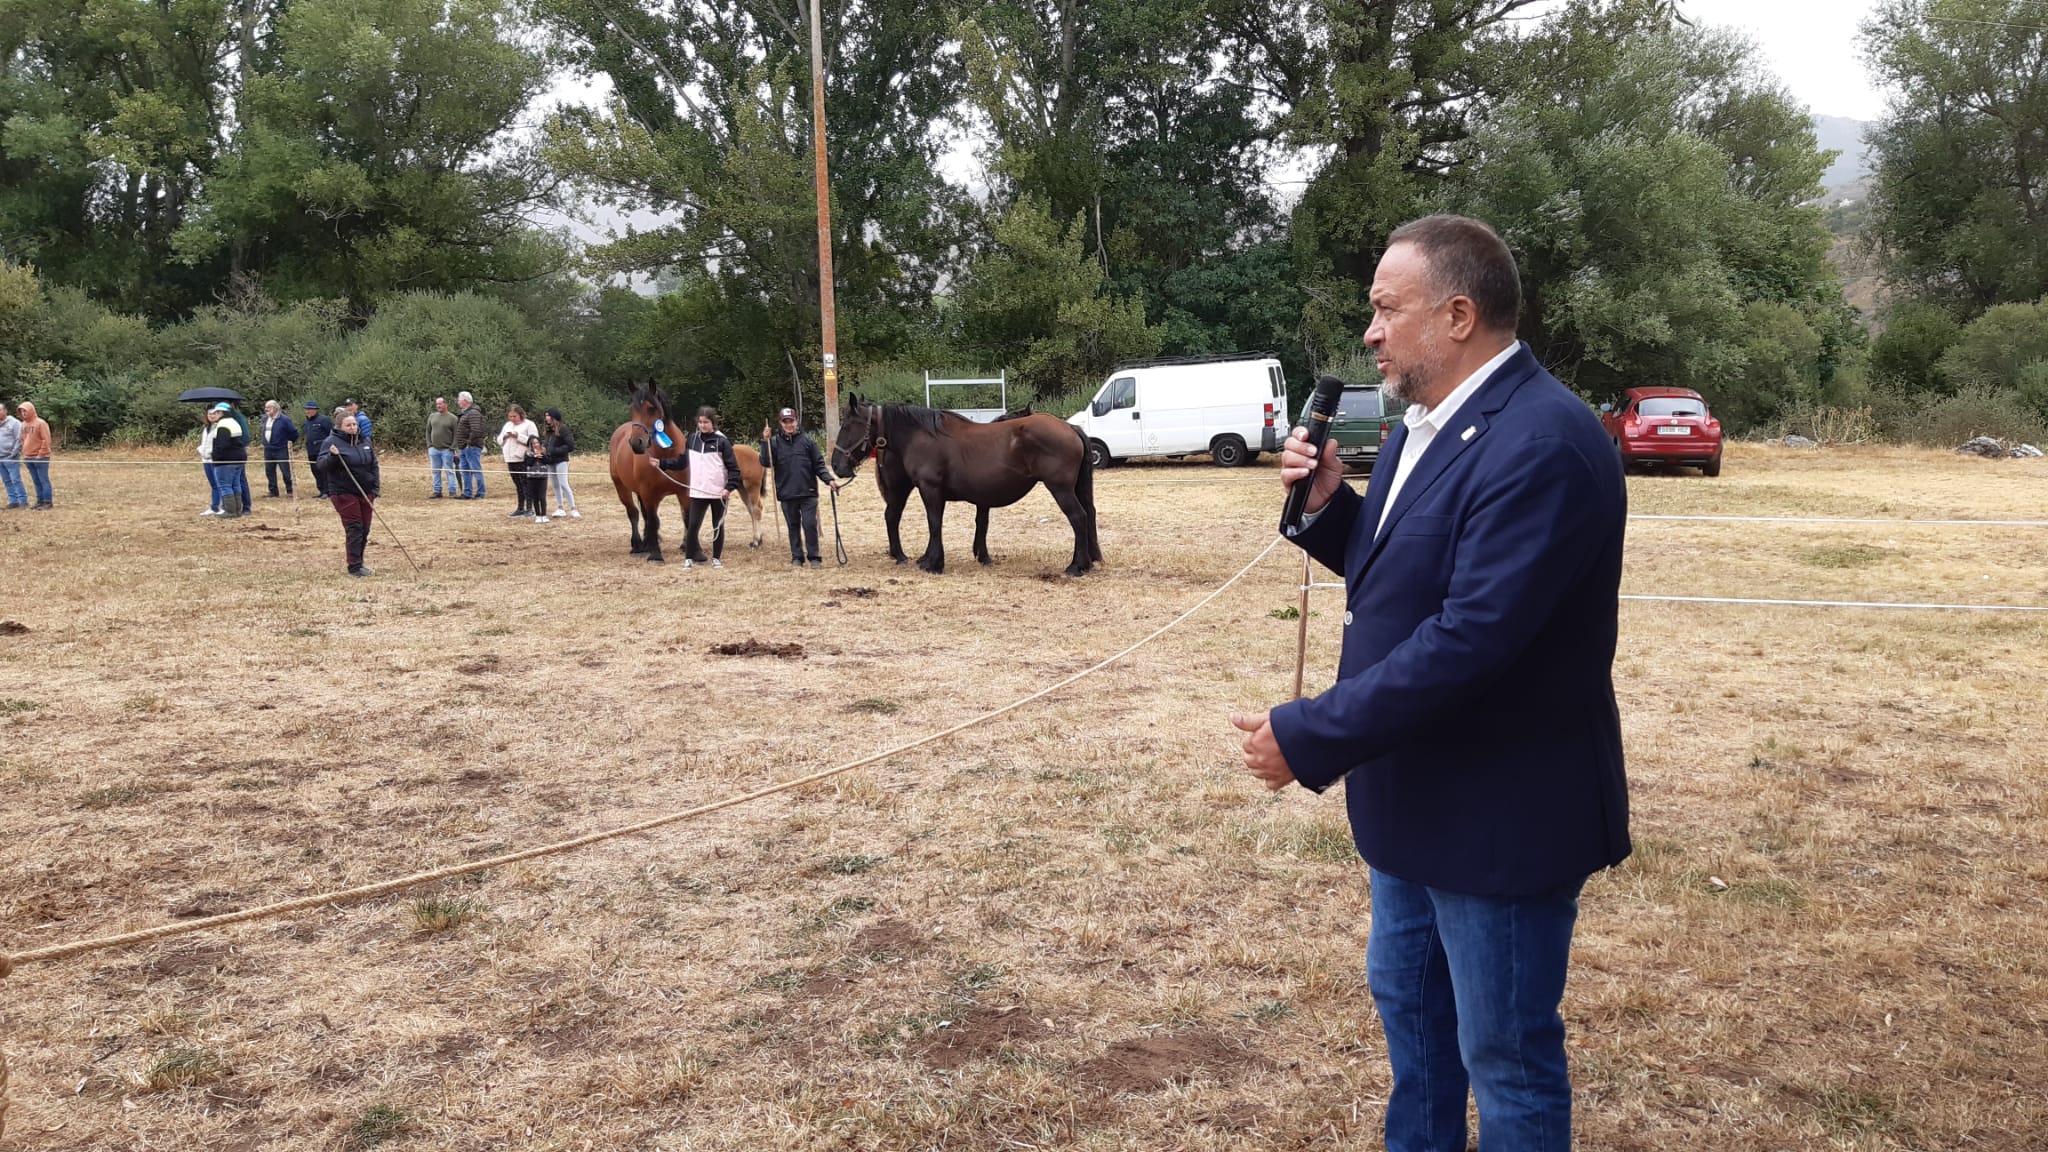 El presidente de la Diputación, Álvarez Courel, en su visita al reputado evento equino de San Emiliano en Babia. | LNC